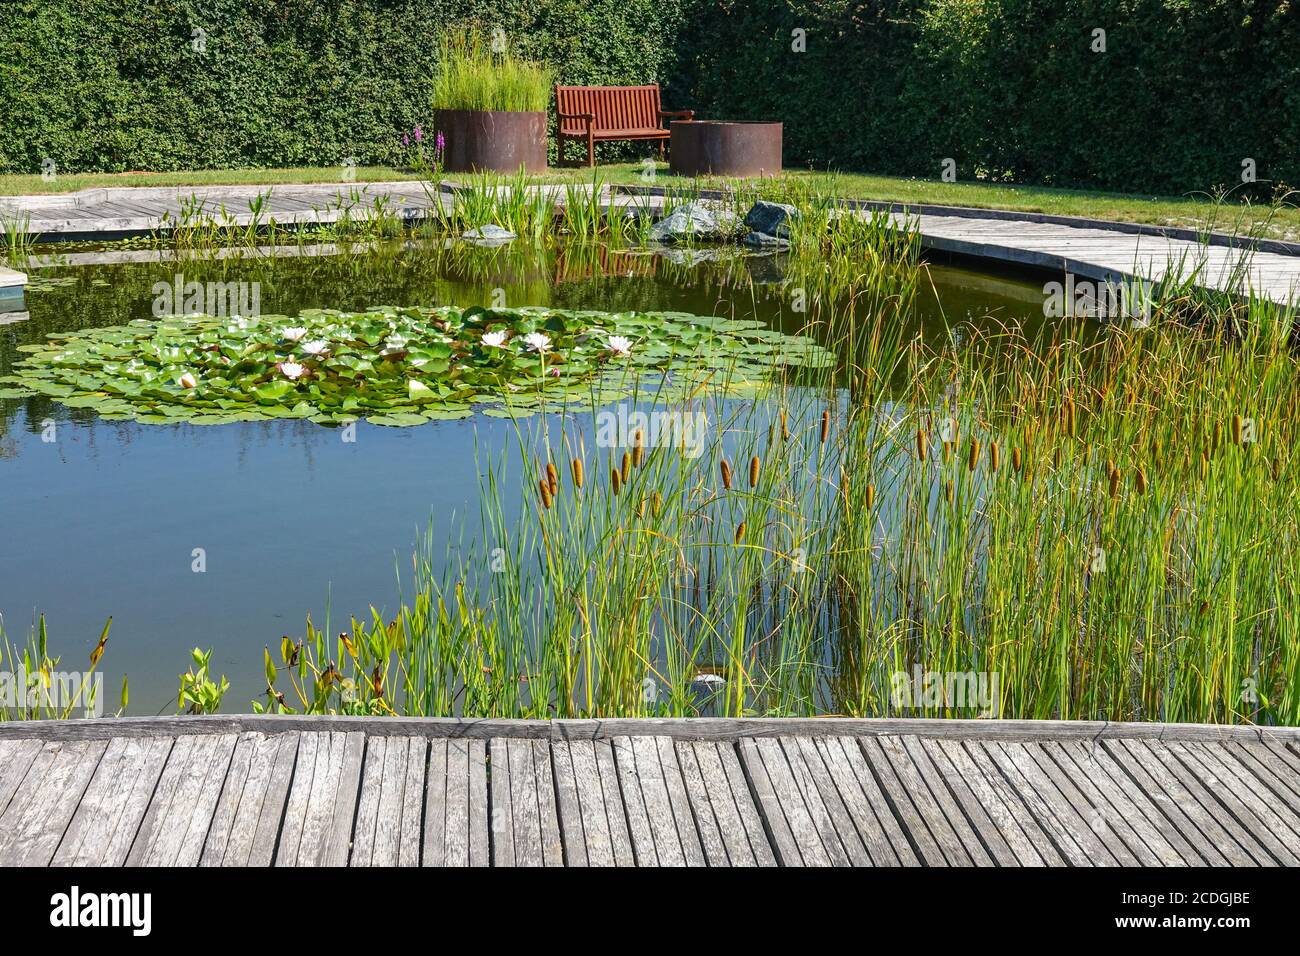 Une zone de repos et de tranquillité, plantes aquatiques qui poussent autour de l'étang du jardin, nénuphars décoratifs en roseau, banc de chemin en bois Banque D'Images